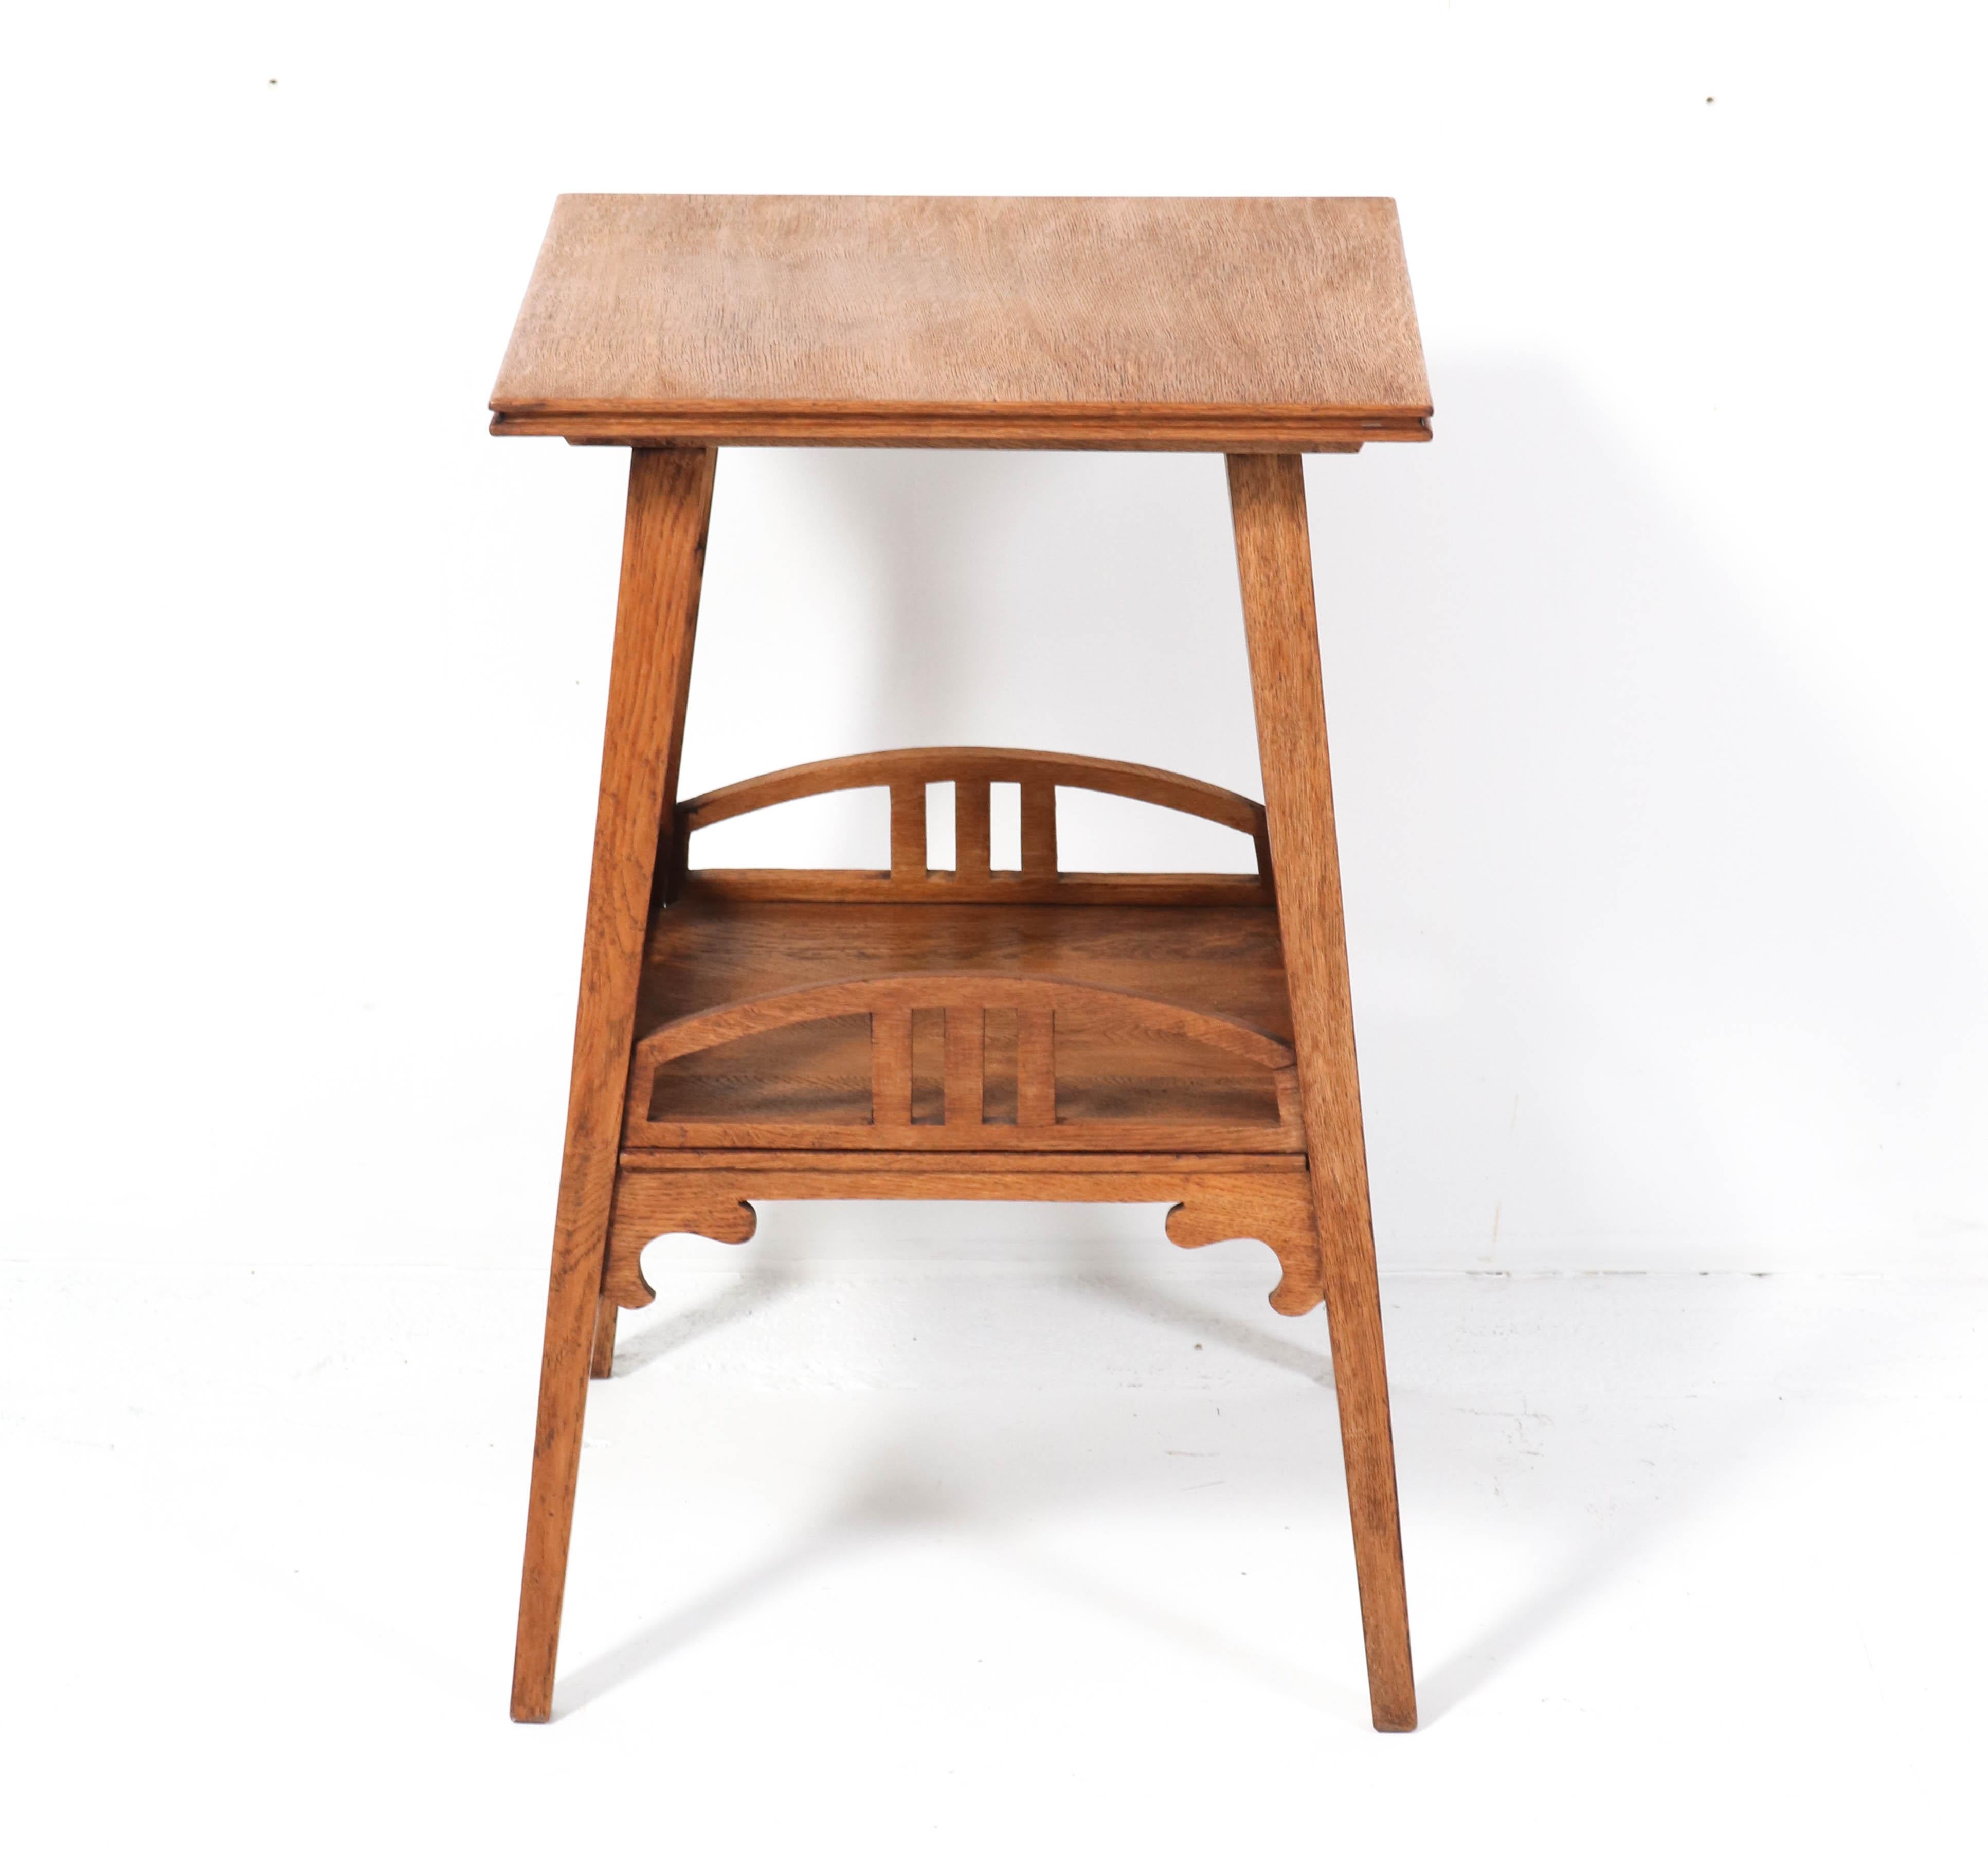 Dutch Oak Art Nouveau Arts & Crafts Pedestal Table or Side Table, 1900s